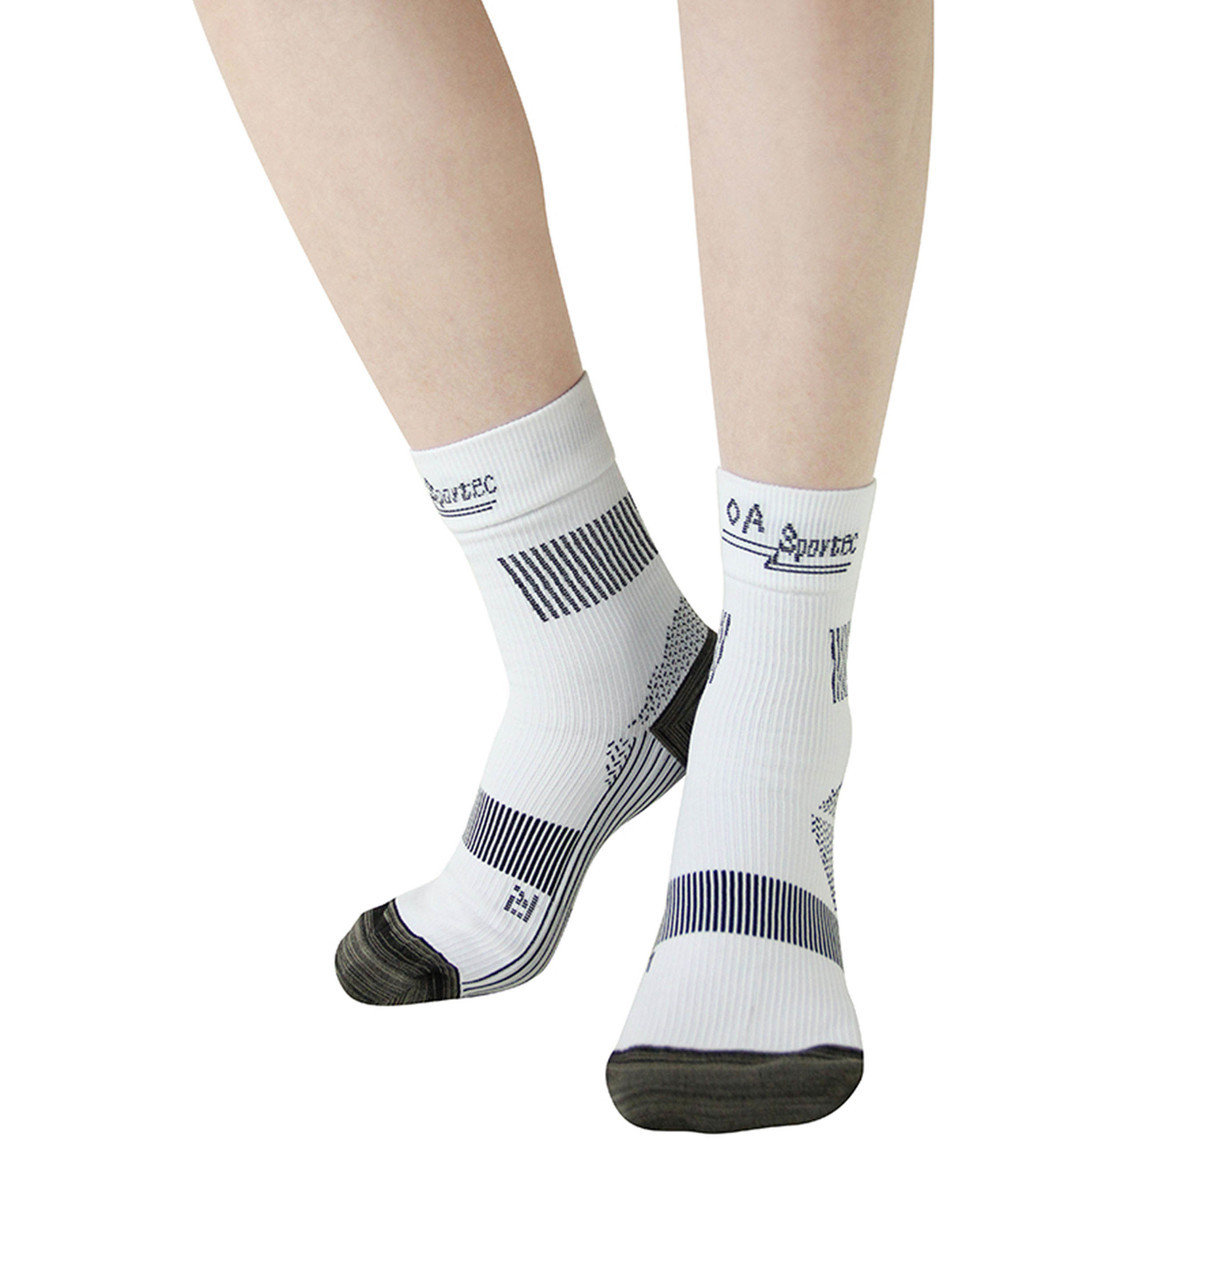 Sportec Compression Socks XS-XL (801) (OA-801)